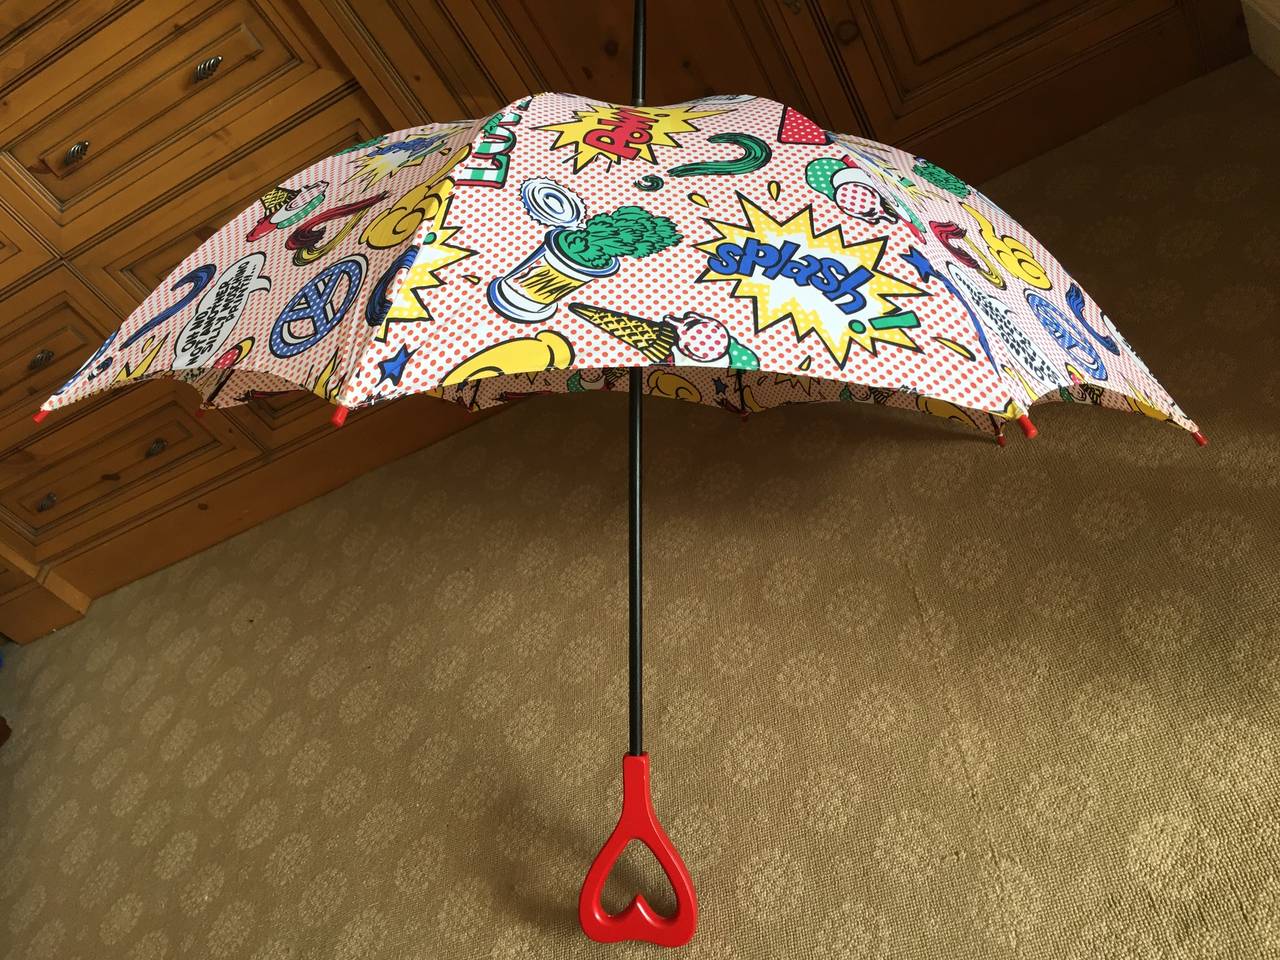 Women's or Men's Moschino 1991 Lichtenstein Inspired Umbrella with Heart Handle